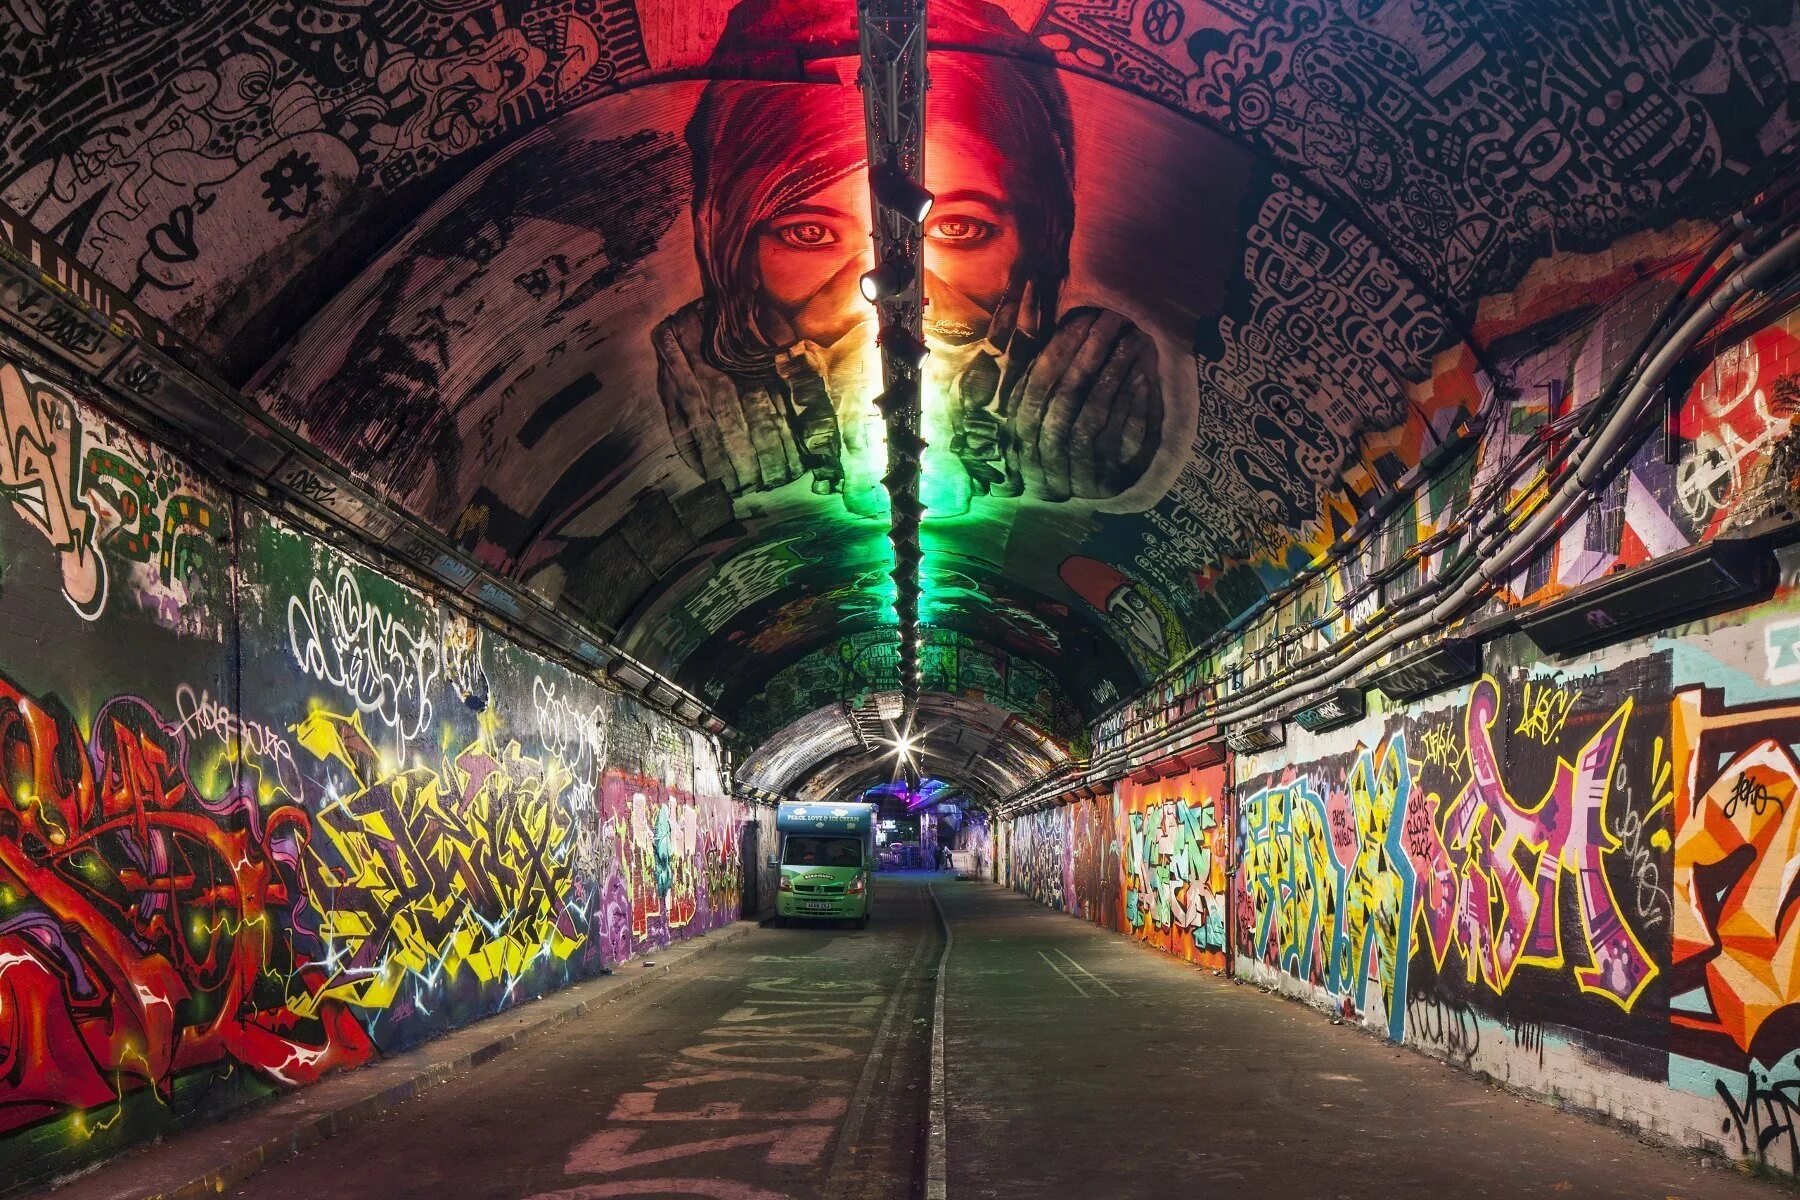 ARTPLAY туннель граффити. Андеграунд стиль андерграунд. Leake Street Grafitti tunnel. Стены в стиле андеграунд.